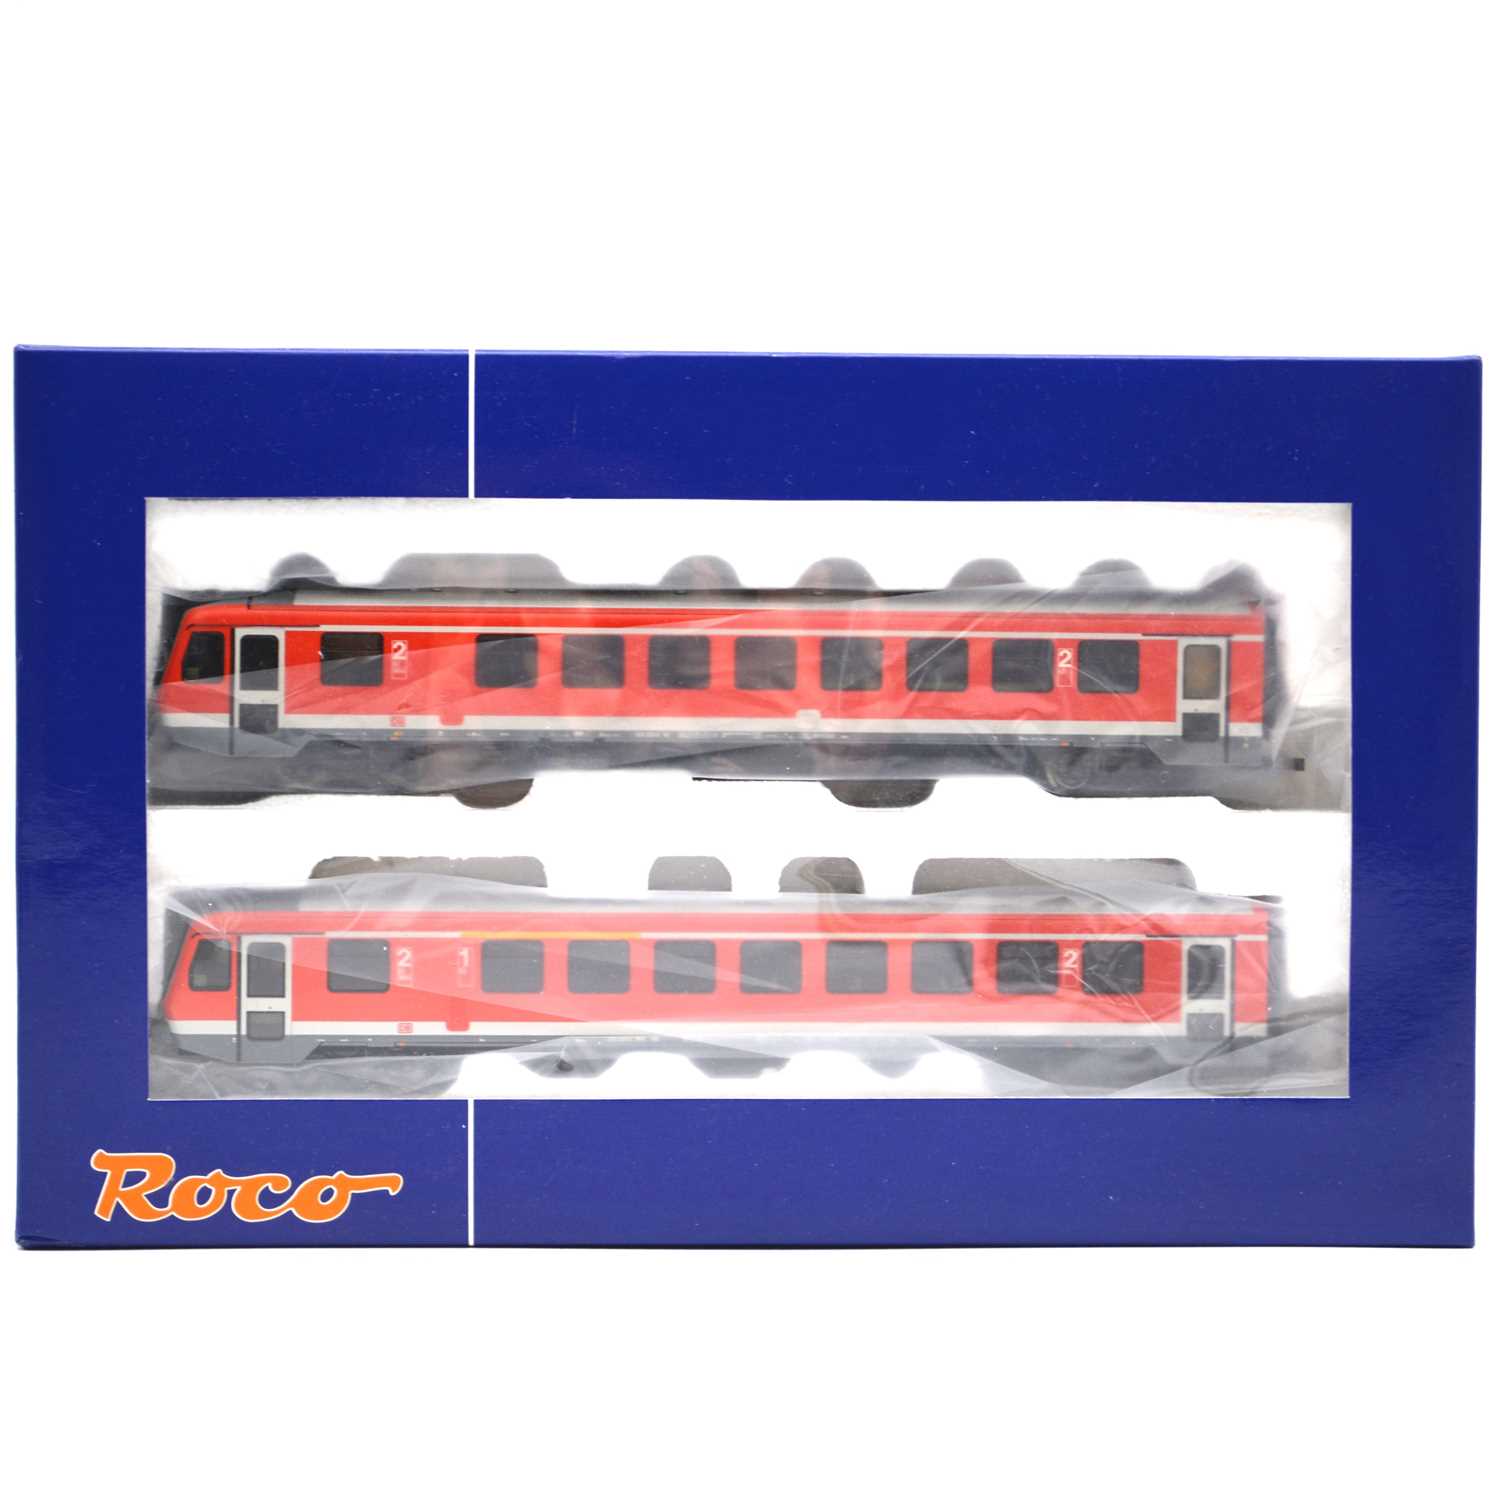 Lot 97 - Roco HO model railways ref 63013 railcar set DBAG 628/928, 2-car, boxed.